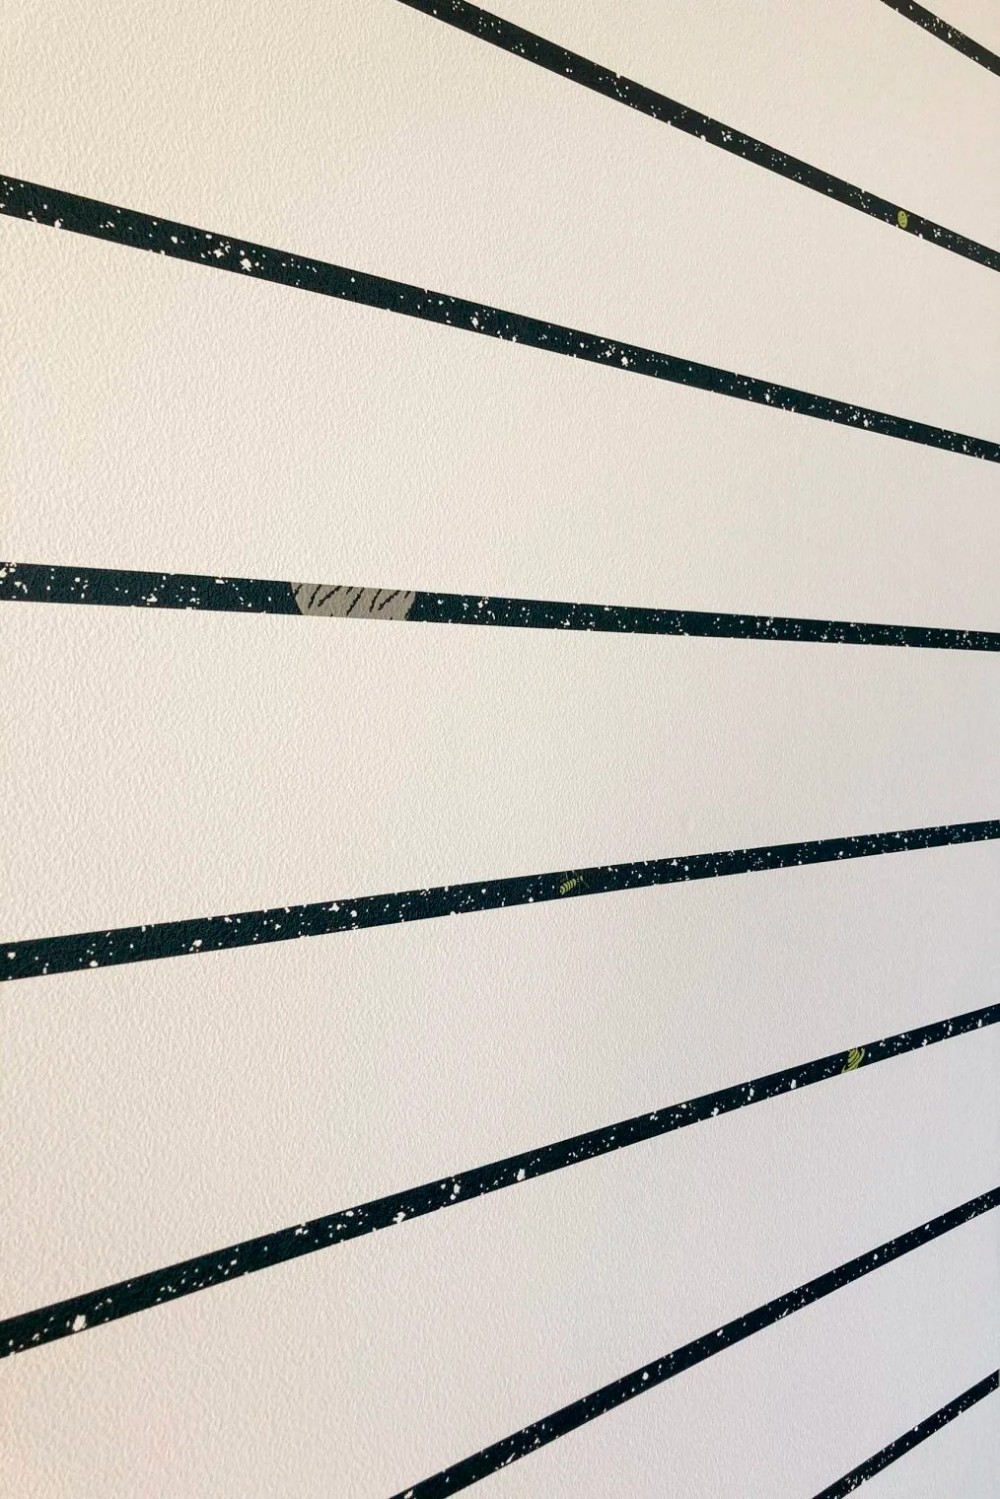 テイストの異なる壁紙を各空間に散りばめる。 (ストライプをよく見ると...)